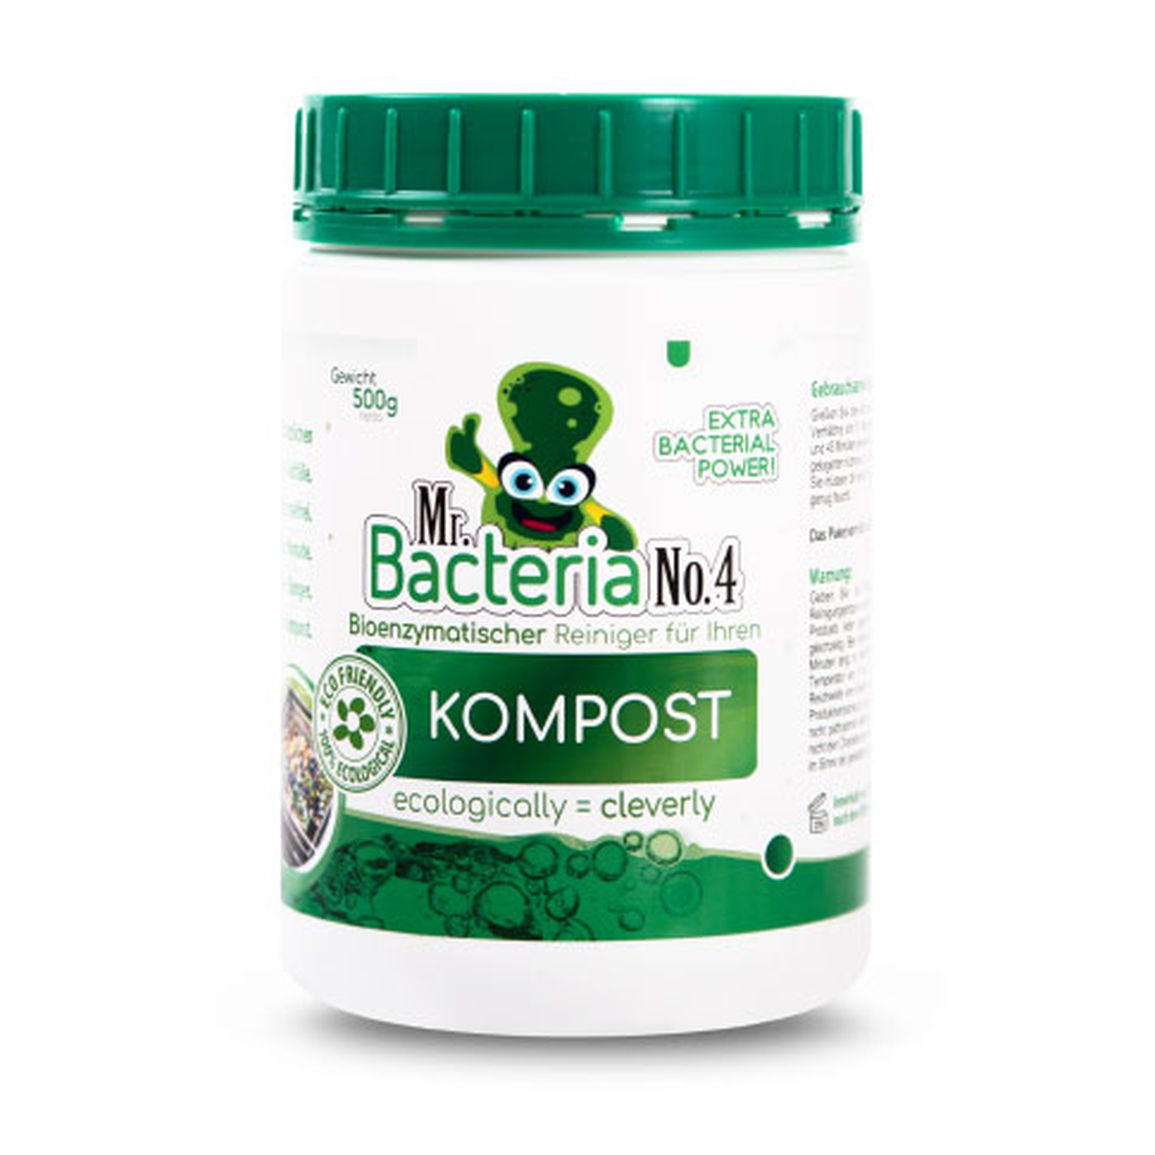 Bioenzymatischer Reiniger für Ihren KOMPOST (Kompostbeschleuniger) 500g